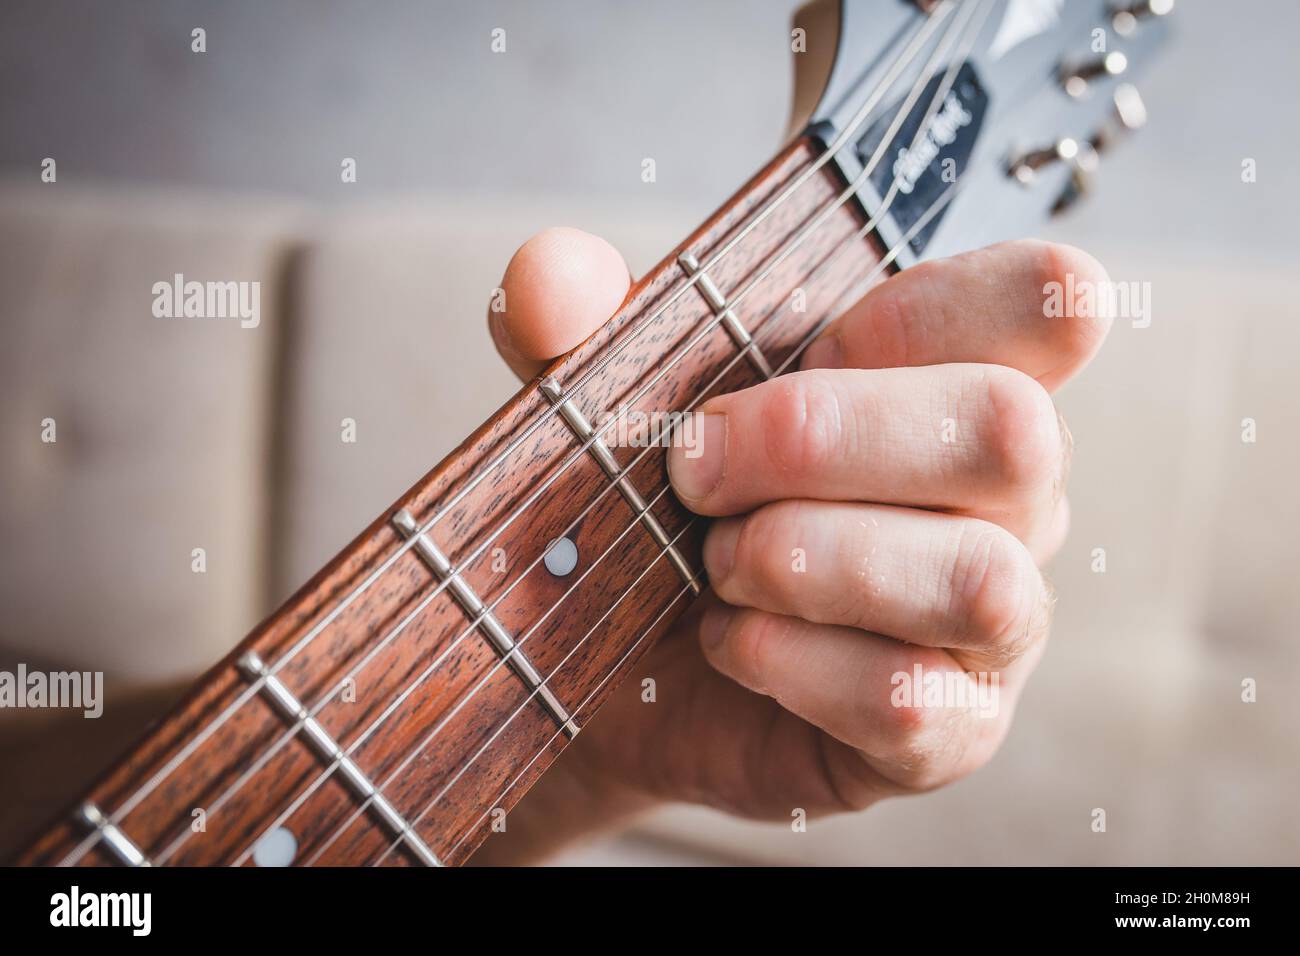 D7 Akkord - Nahaufnahme männliche kaukasische Hand nimmt einen Akkord auf  einer 6-saitigen Gitarre Stockfotografie - Alamy